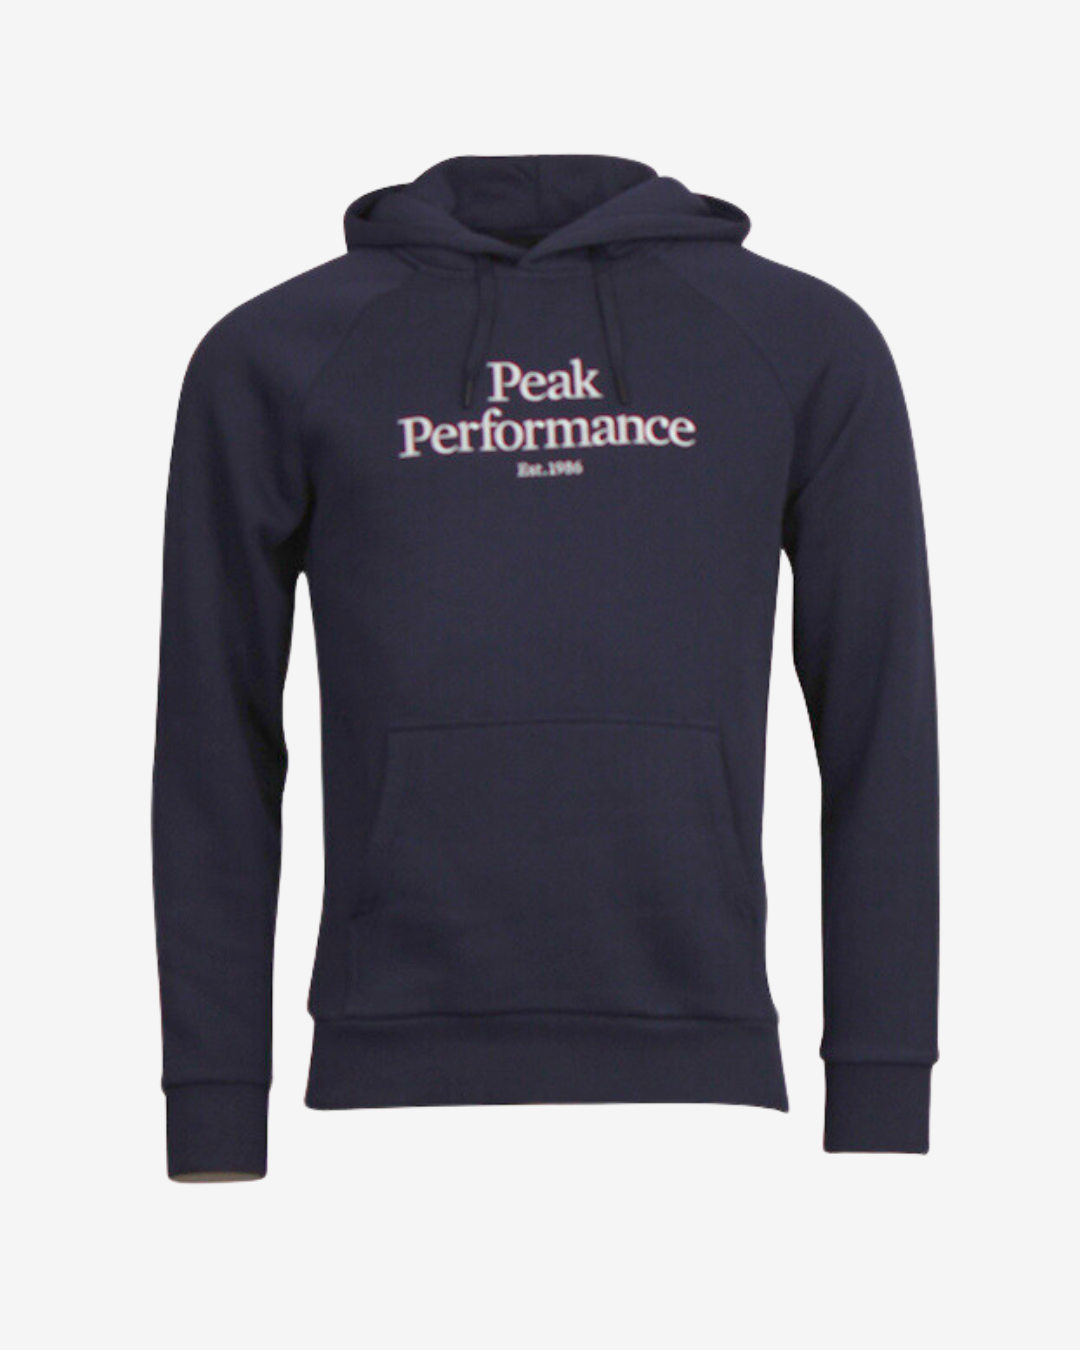 Se Peak Performance Original logo hættetrøje - Navy - Str. L - Modish.dk hos Modish.dk